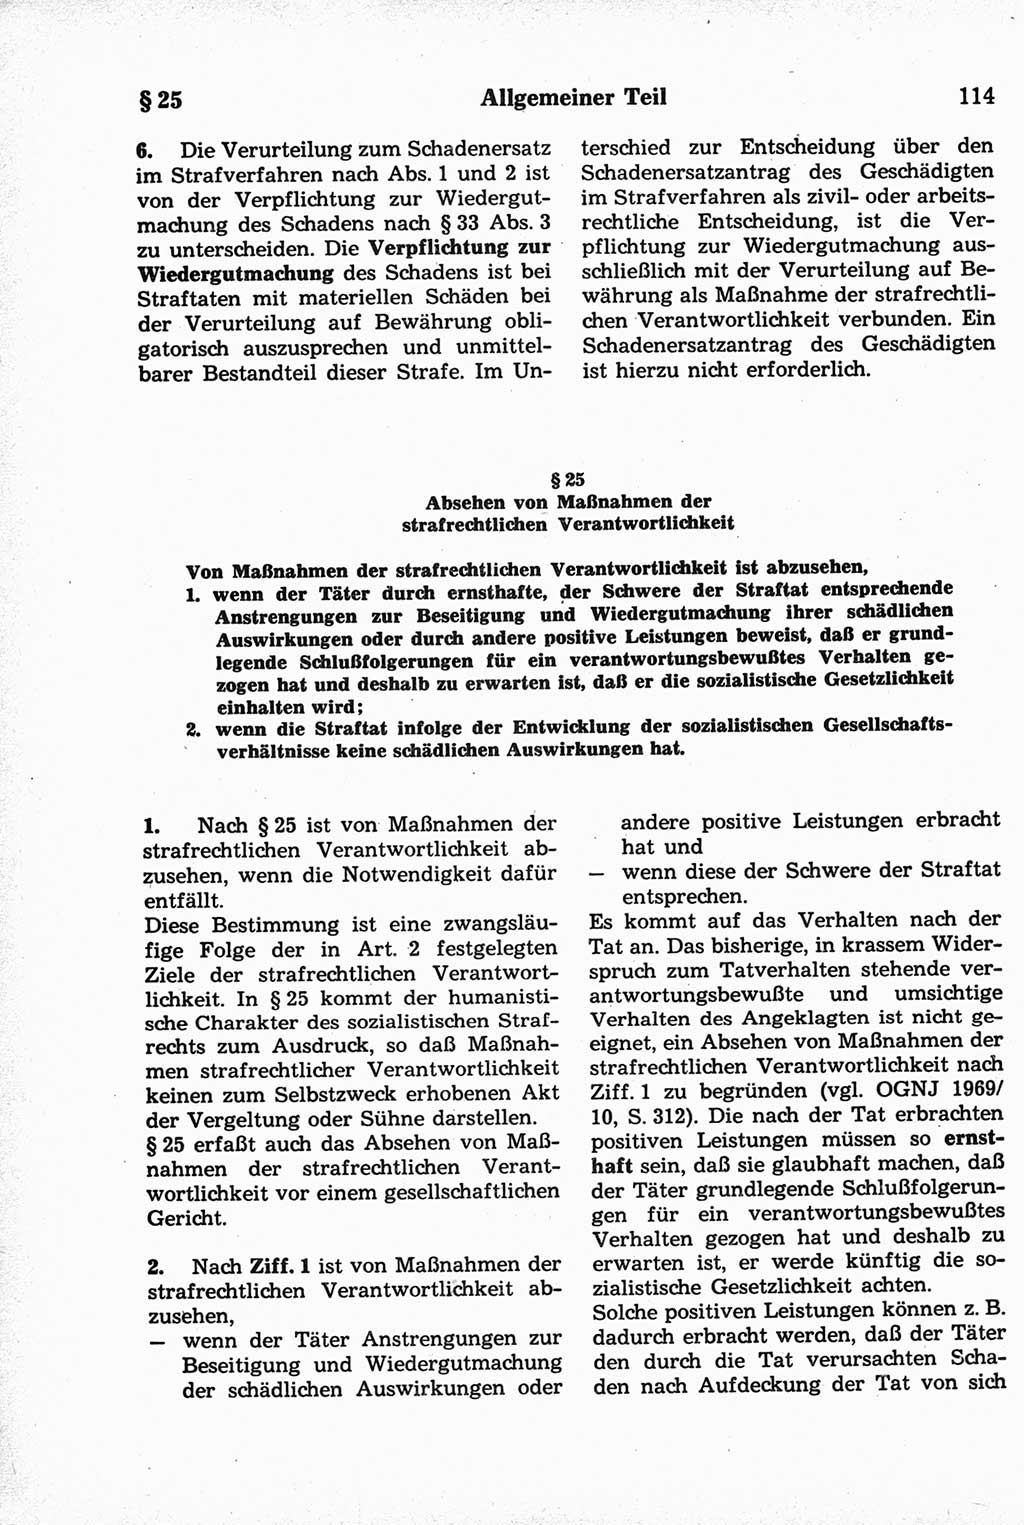 Strafrecht der Deutschen Demokratischen Republik (DDR), Kommentar zum Strafgesetzbuch (StGB) 1981, Seite 114 (Strafr. DDR Komm. StGB 1981, S. 114)